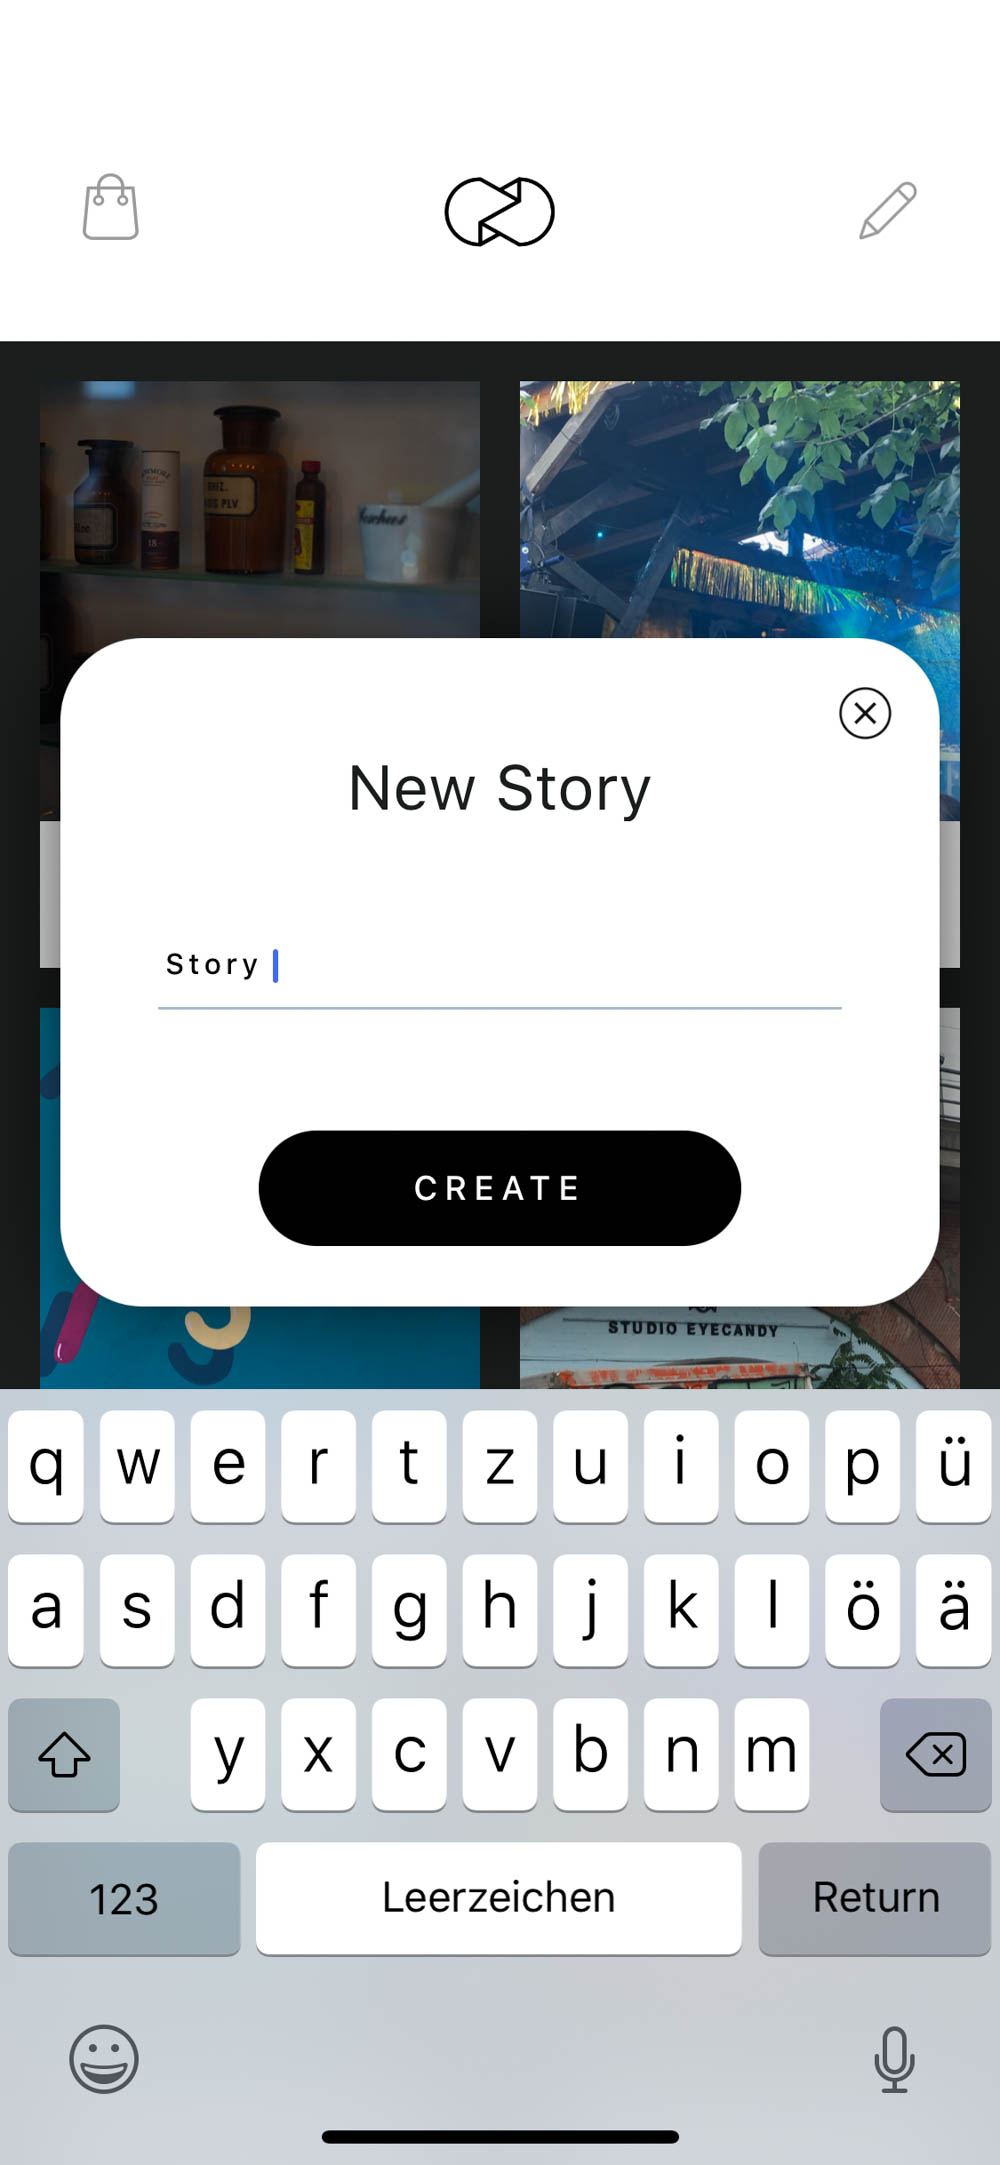 Apps für Instagram Stories-Instagram Vintage Filter-Instagram Apps-Blogger Tipps-Fotografie-andysparkles